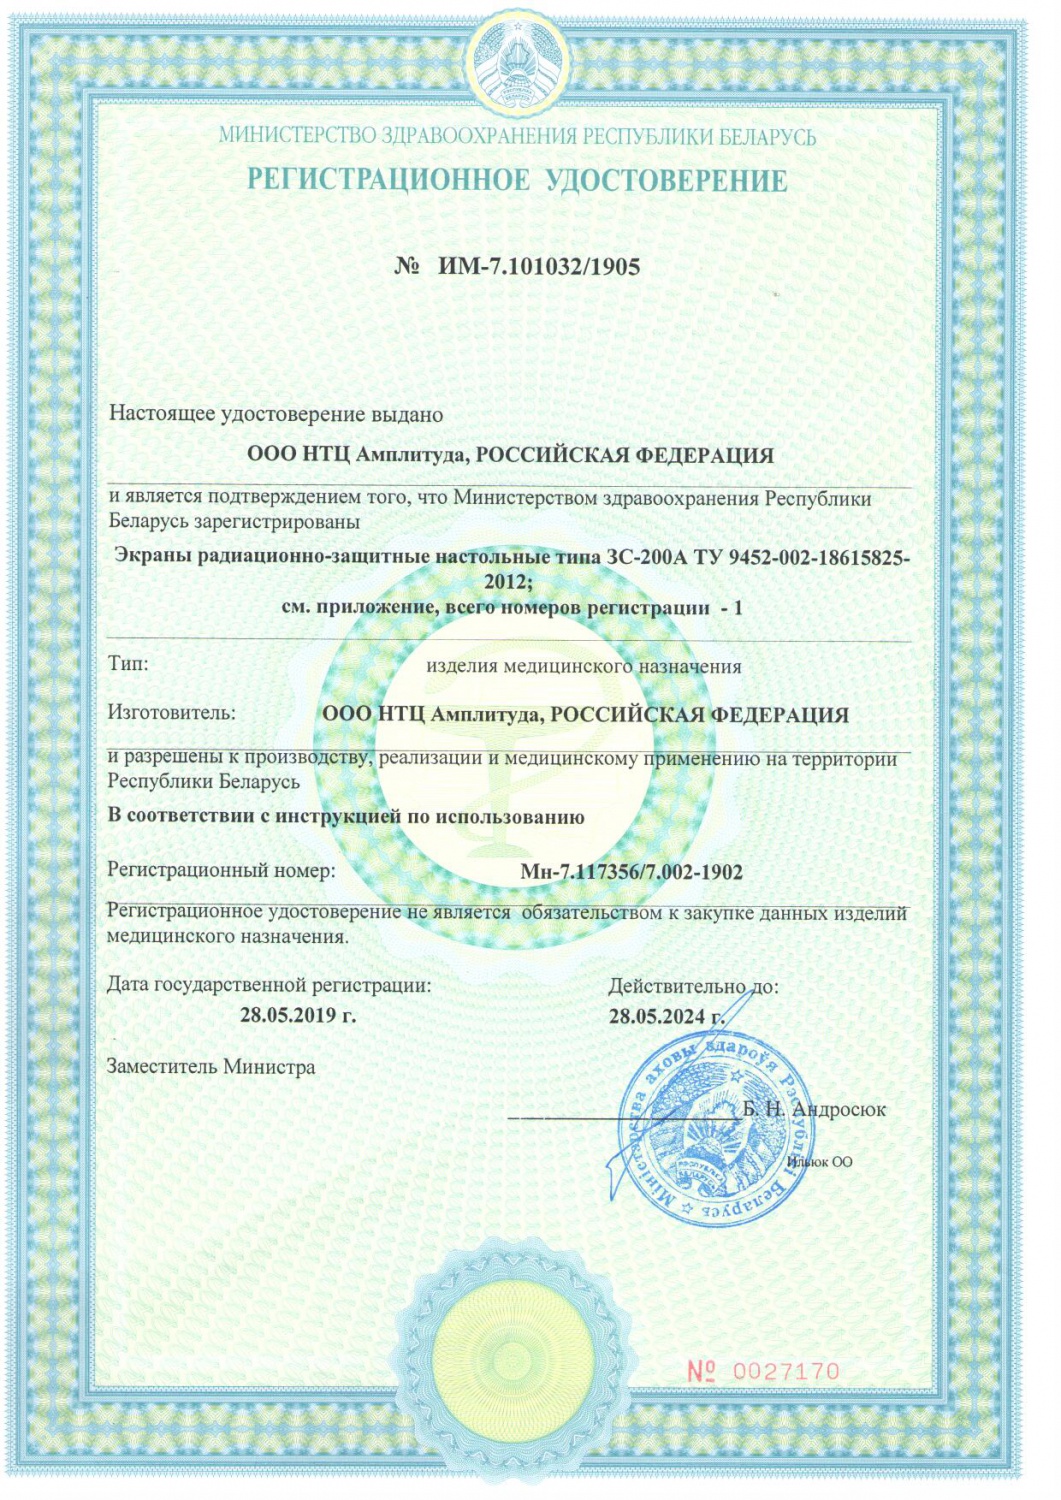 ООО "НТЦ Амплитуда" получило государственное регистрационное удостоверение Республики Беларусь на Экраны радиационно-защитные настольные типа ЗС-200А